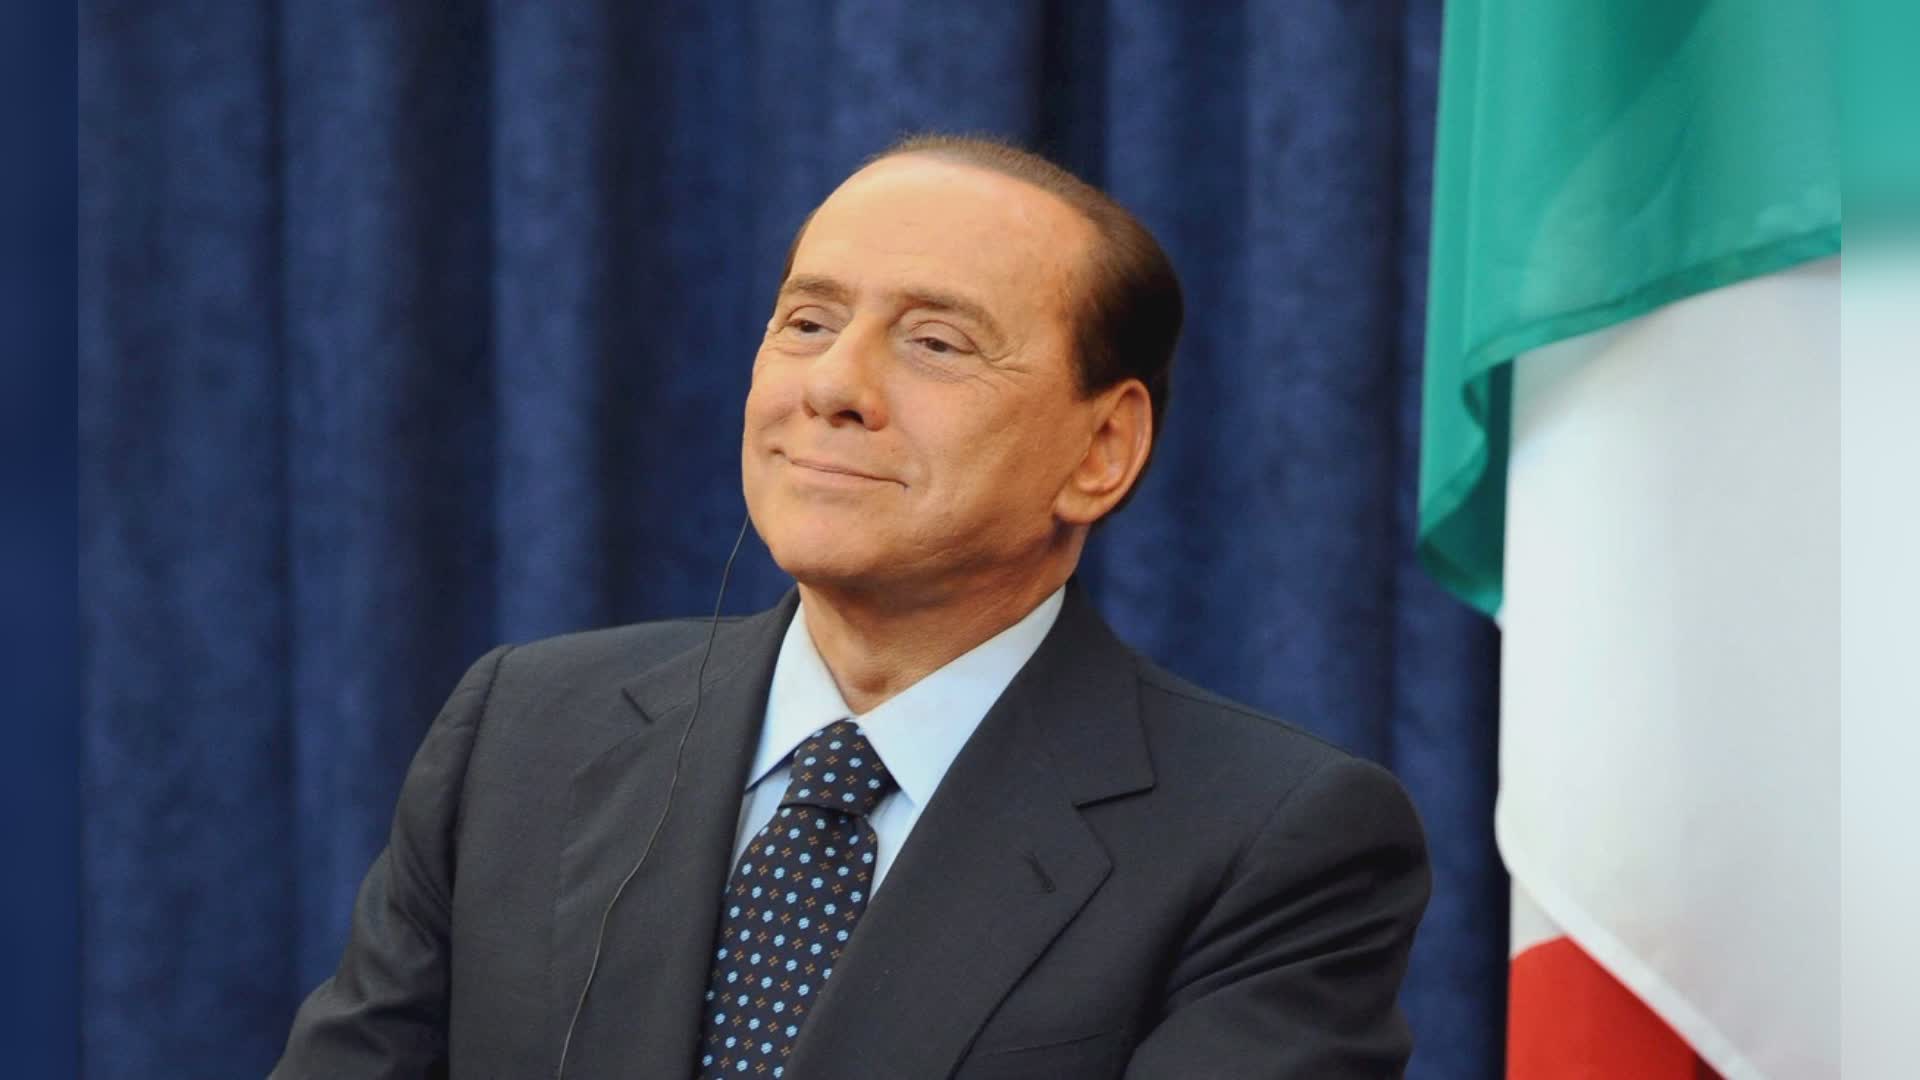 L’area adiacente al PalaTerni sarà intitolata a Silvio Berlusconi